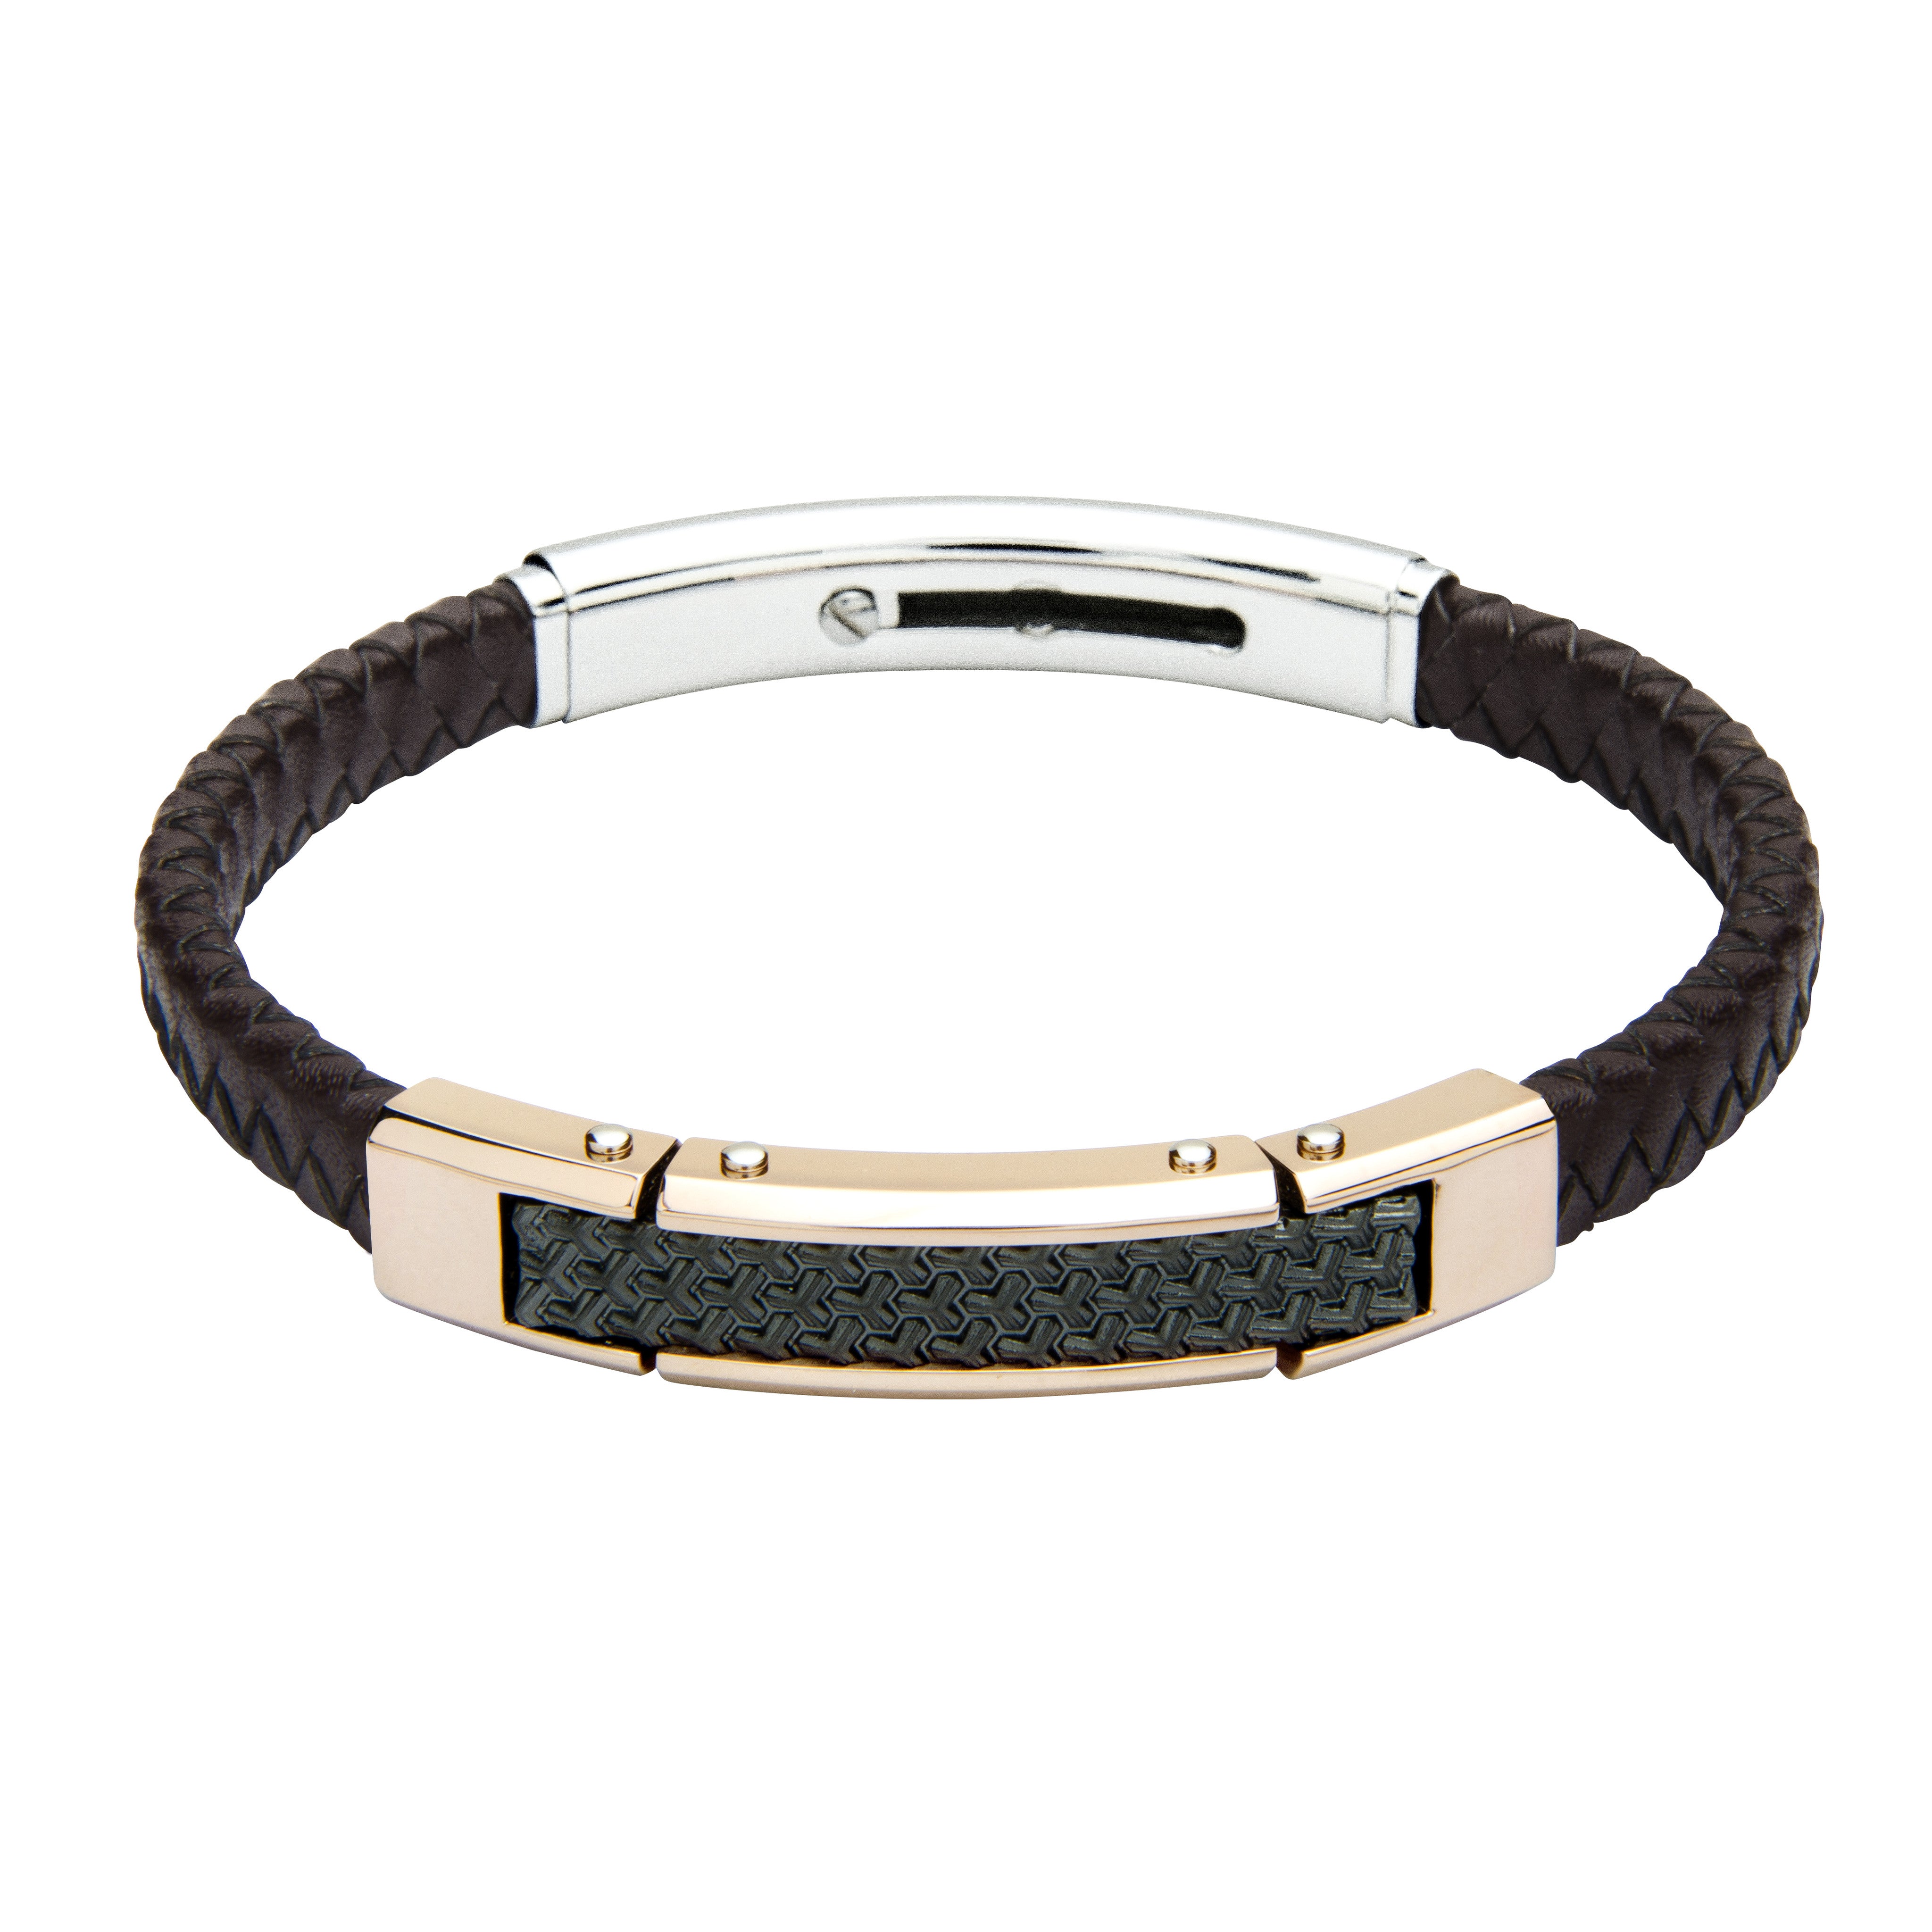 FUB23 leather and steel adjustable bracelet